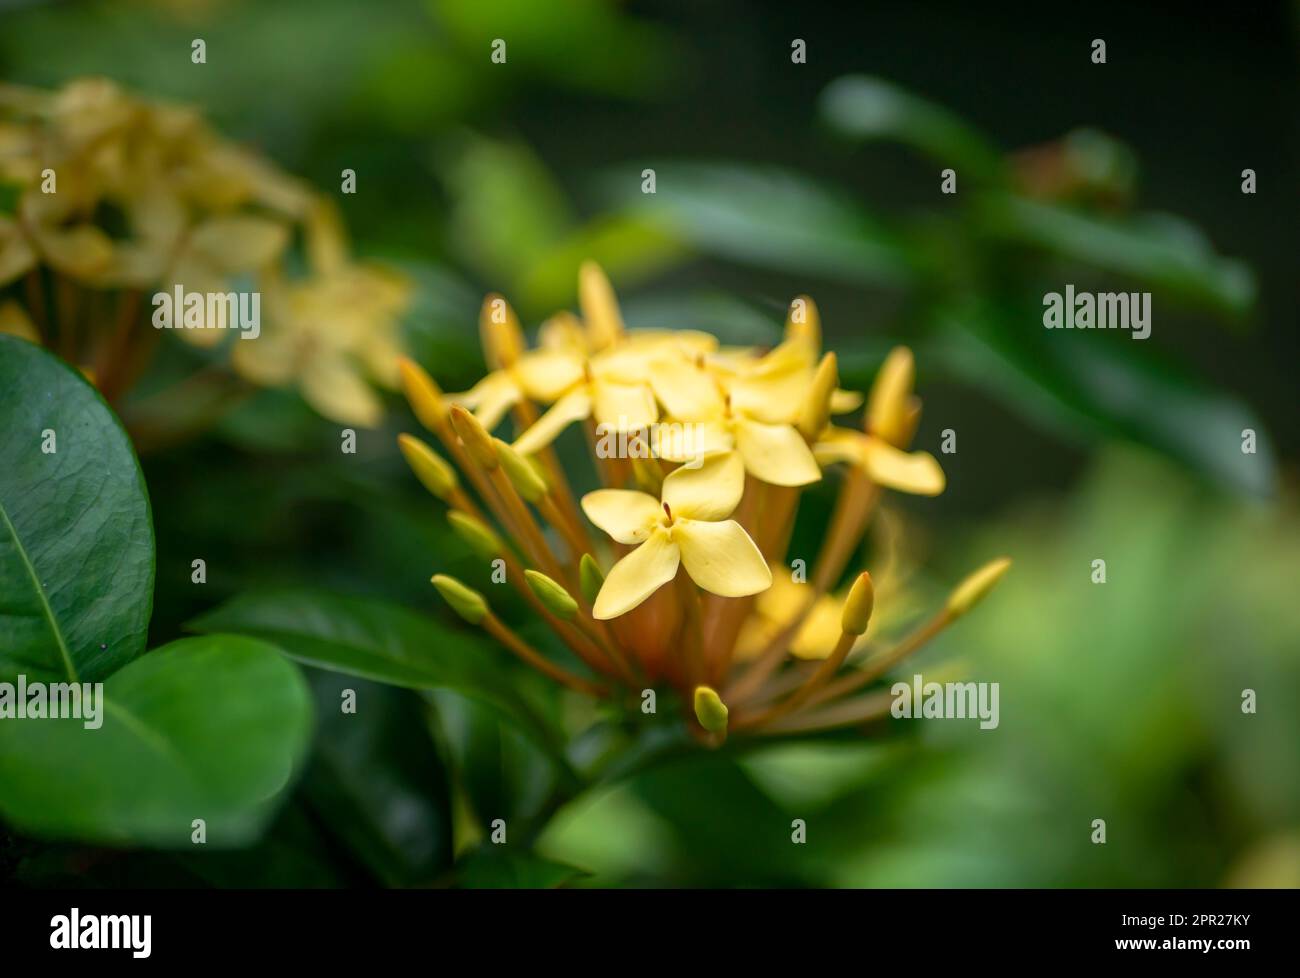 Fleur de Soka jaune, Ixora coccinea, géranium de la jungle, une espèce de la famille des Rubiaceae. Mise au point peu profonde Banque D'Images